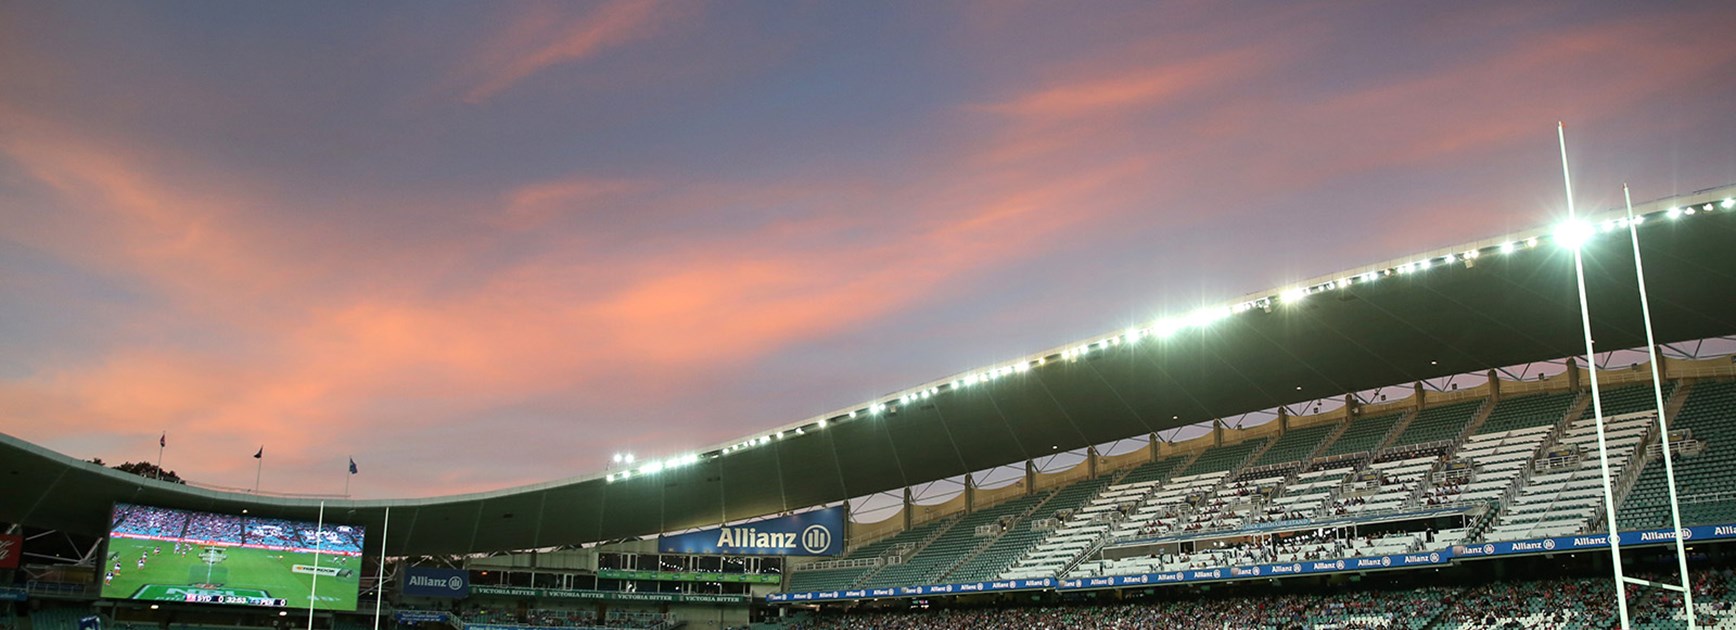 The sun sets on Allianz Stadium.